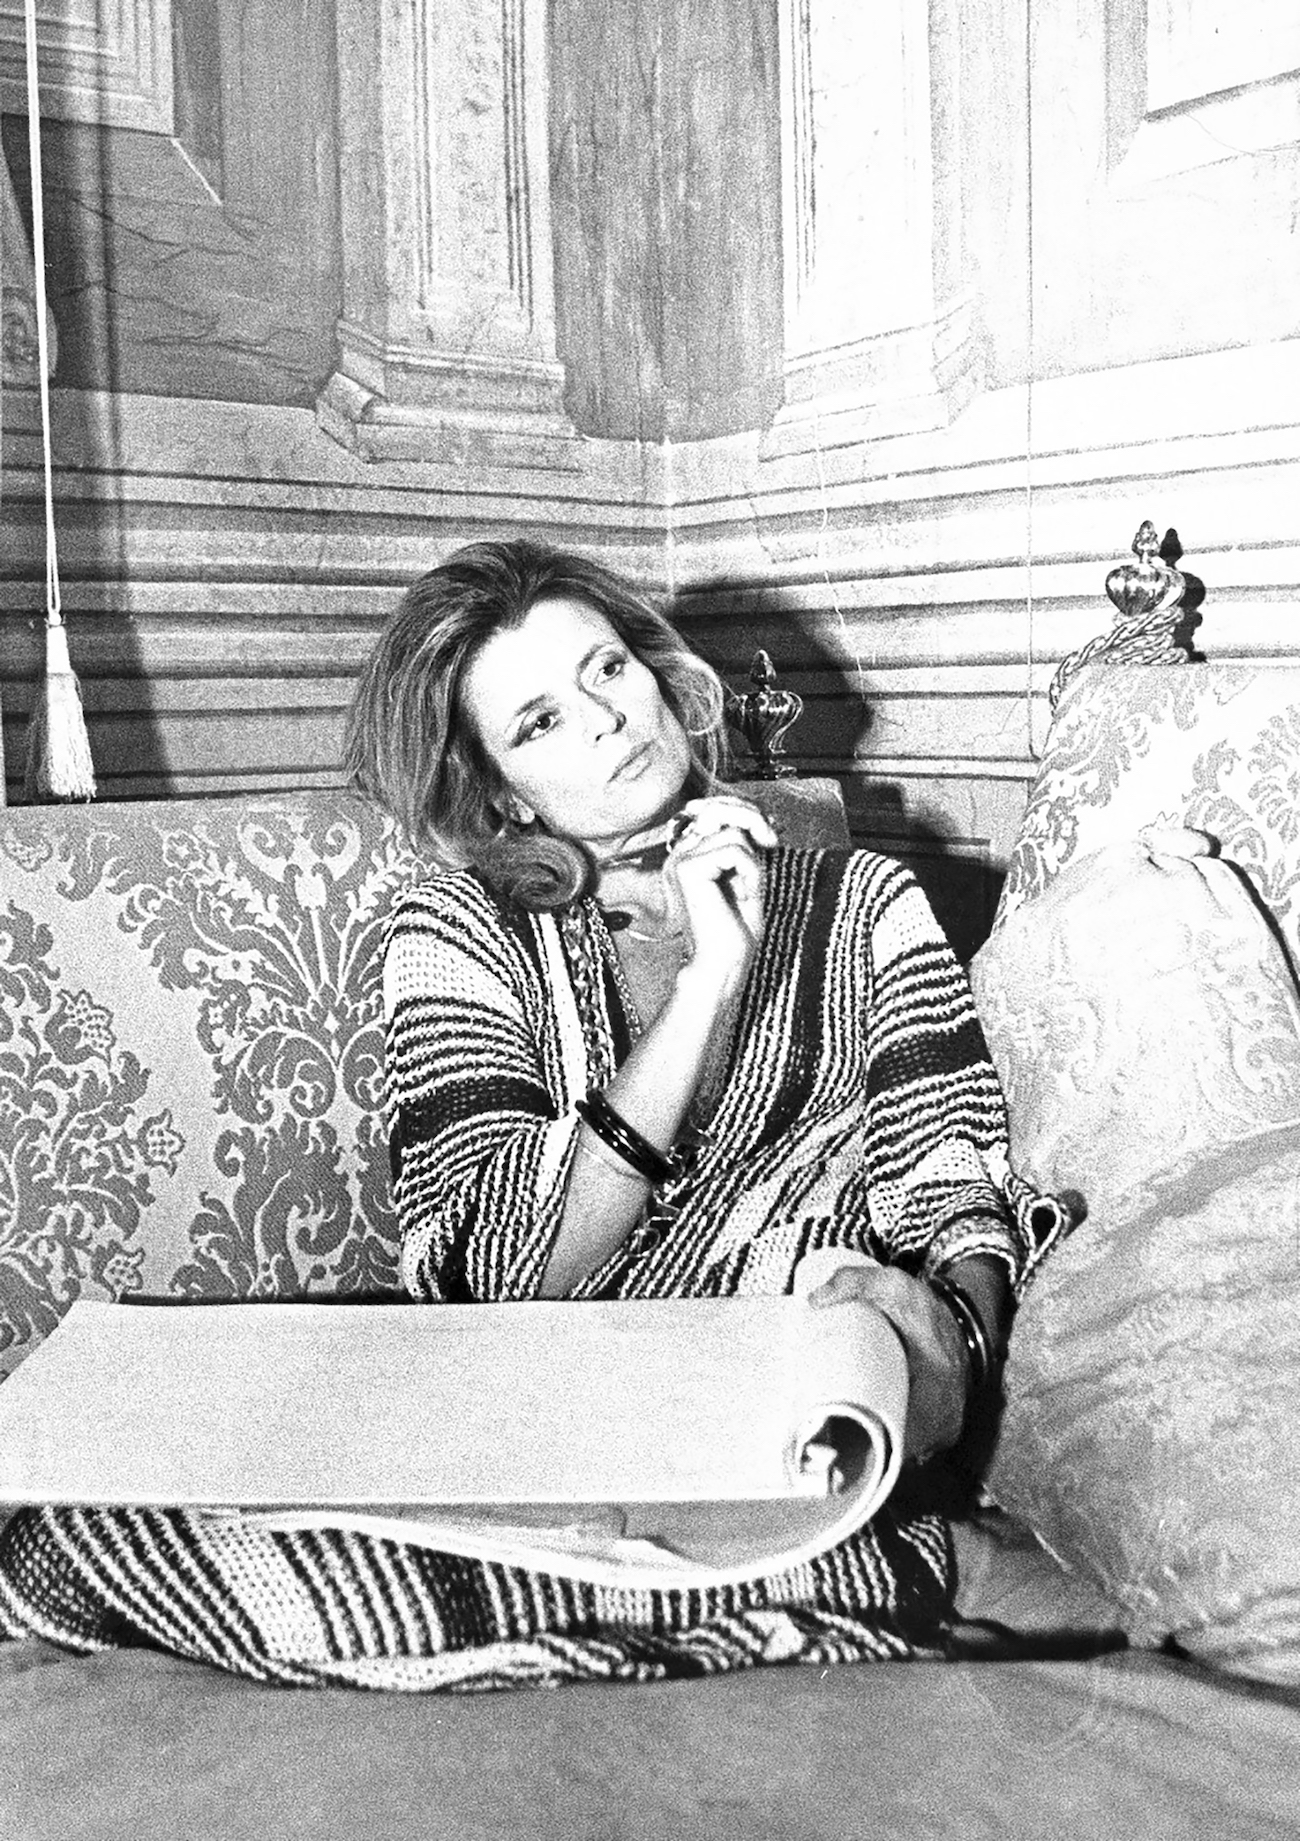 Gabriella Crespi pictured in 1970